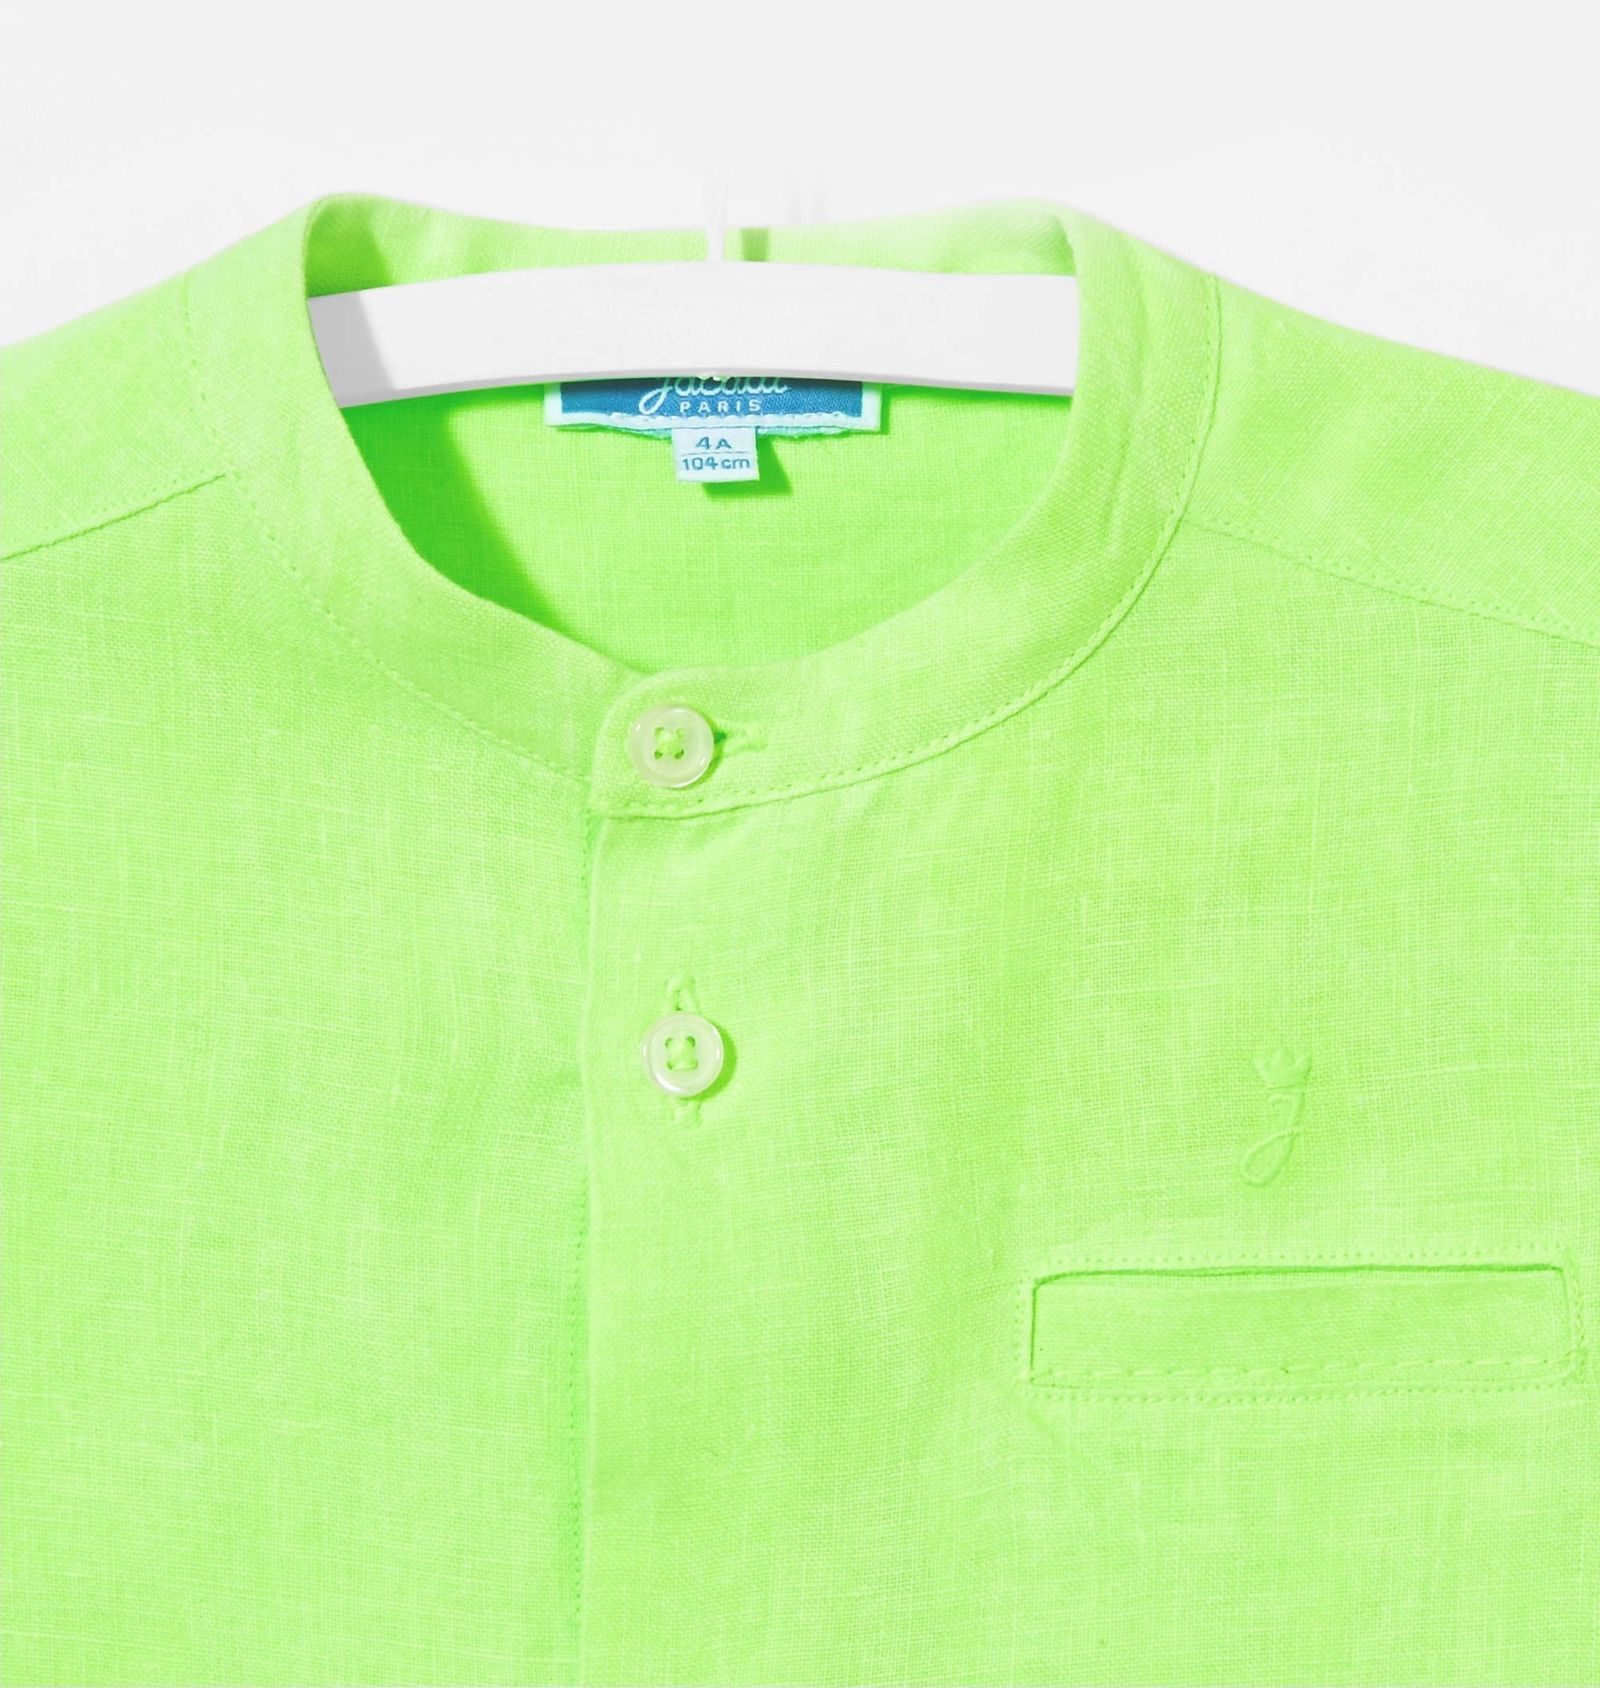 پیراهن کتان آستین بلند پسرانه Eclipsebis - جاکادی - سبز - 4